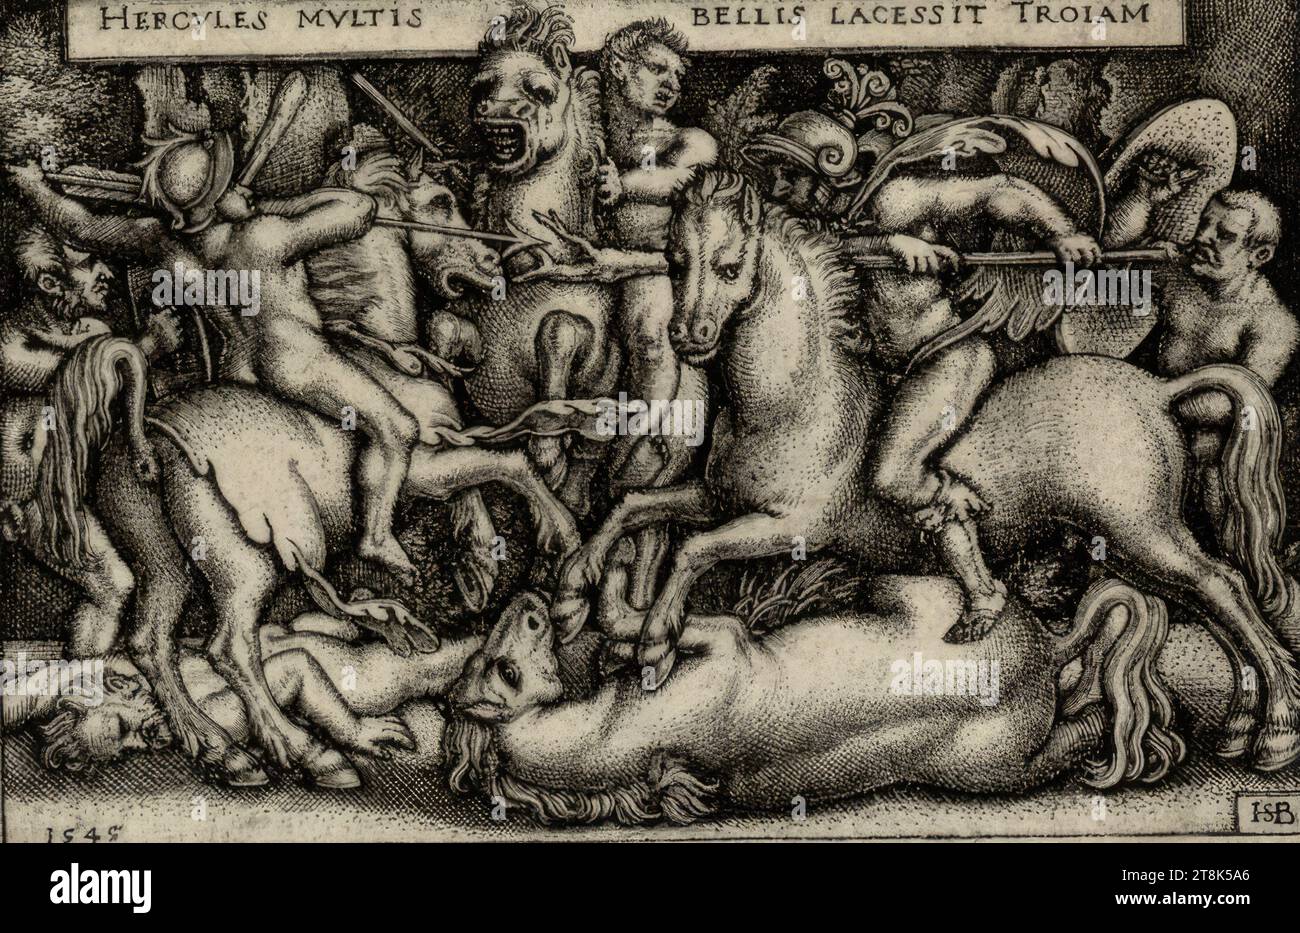 Hercules combatte con i Troiani, Sebald Beham, Norimberga 1500 - 1550 Francoforte sul meno, 1545, stampa, incisione su copperplate Foto Stock